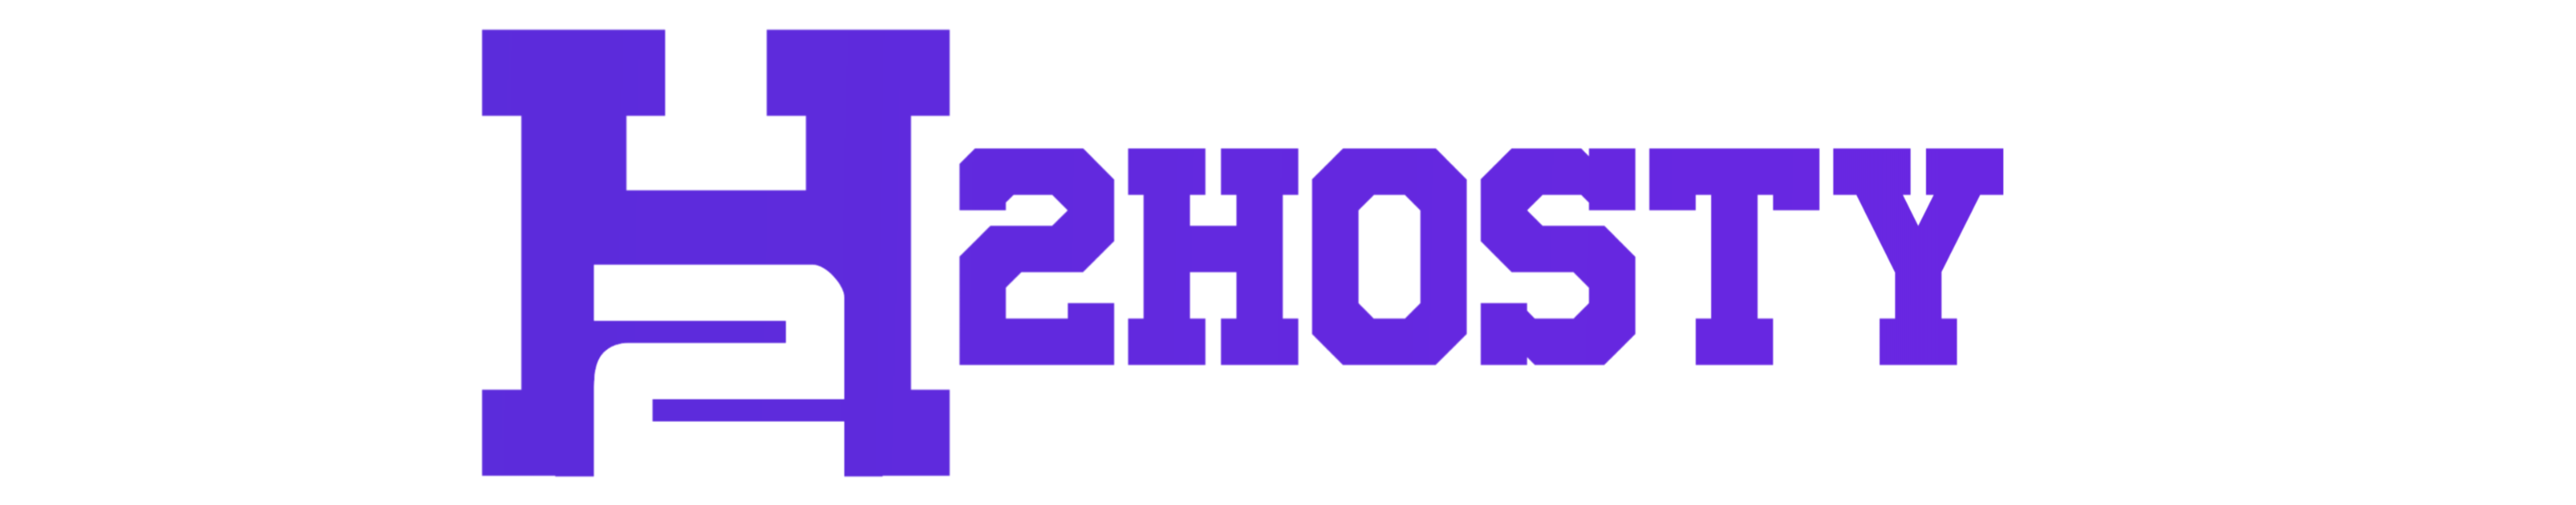 H2HOSTY Logo